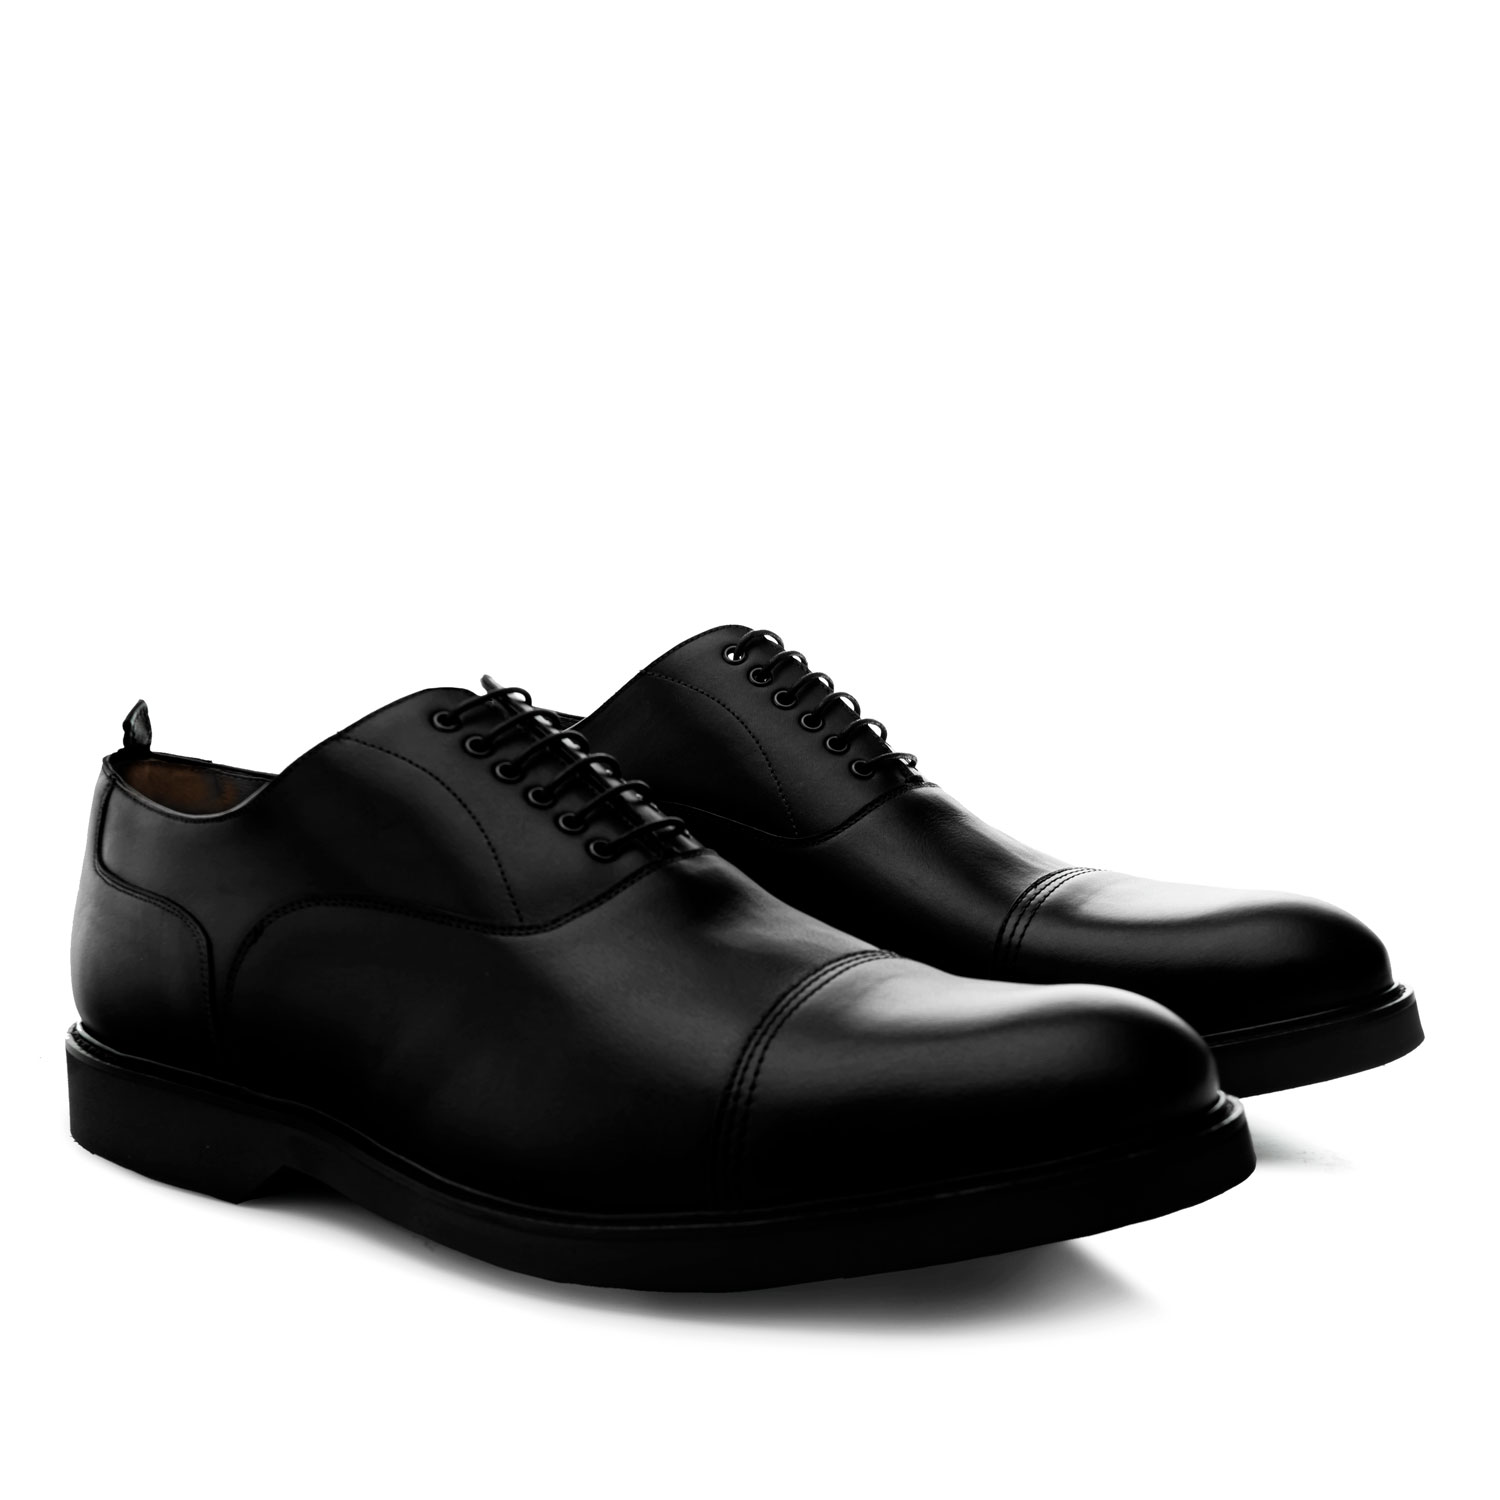 Zapatos estilo Oxford en Cuero de color Negro 